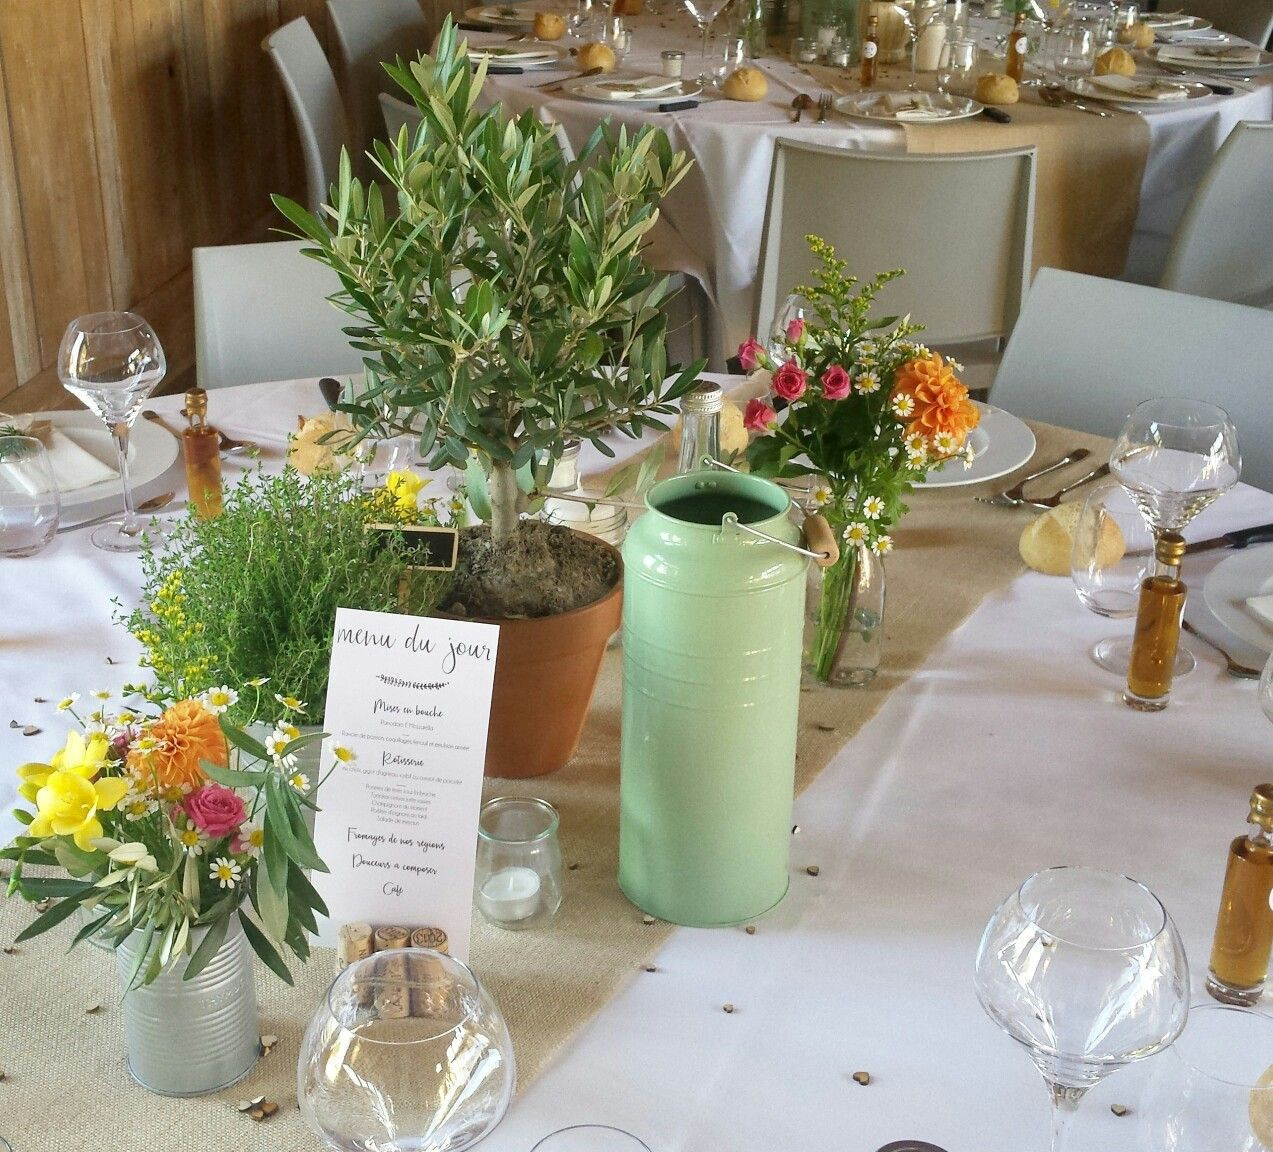 Centre De Table: Oliver, Plantes Aromatiques Et Fleurs Champêtres destiné Centre De Table Champetre